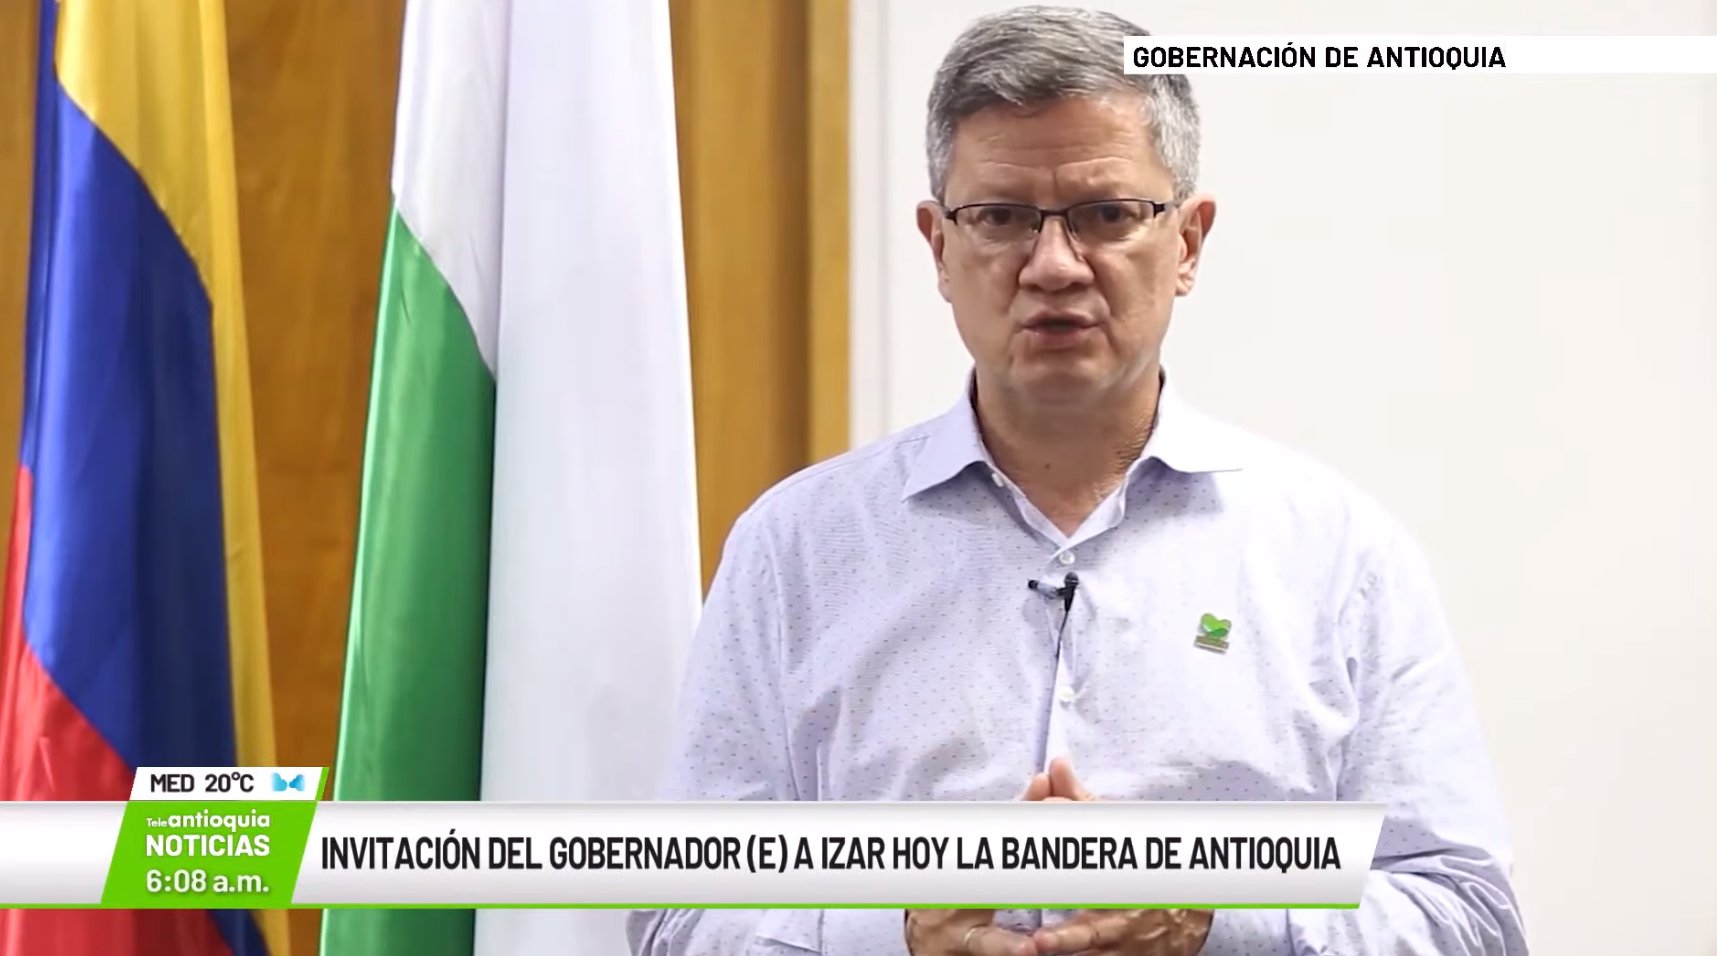 Invitación del gobernador (e) a izar hoy la bandera de Antioquia